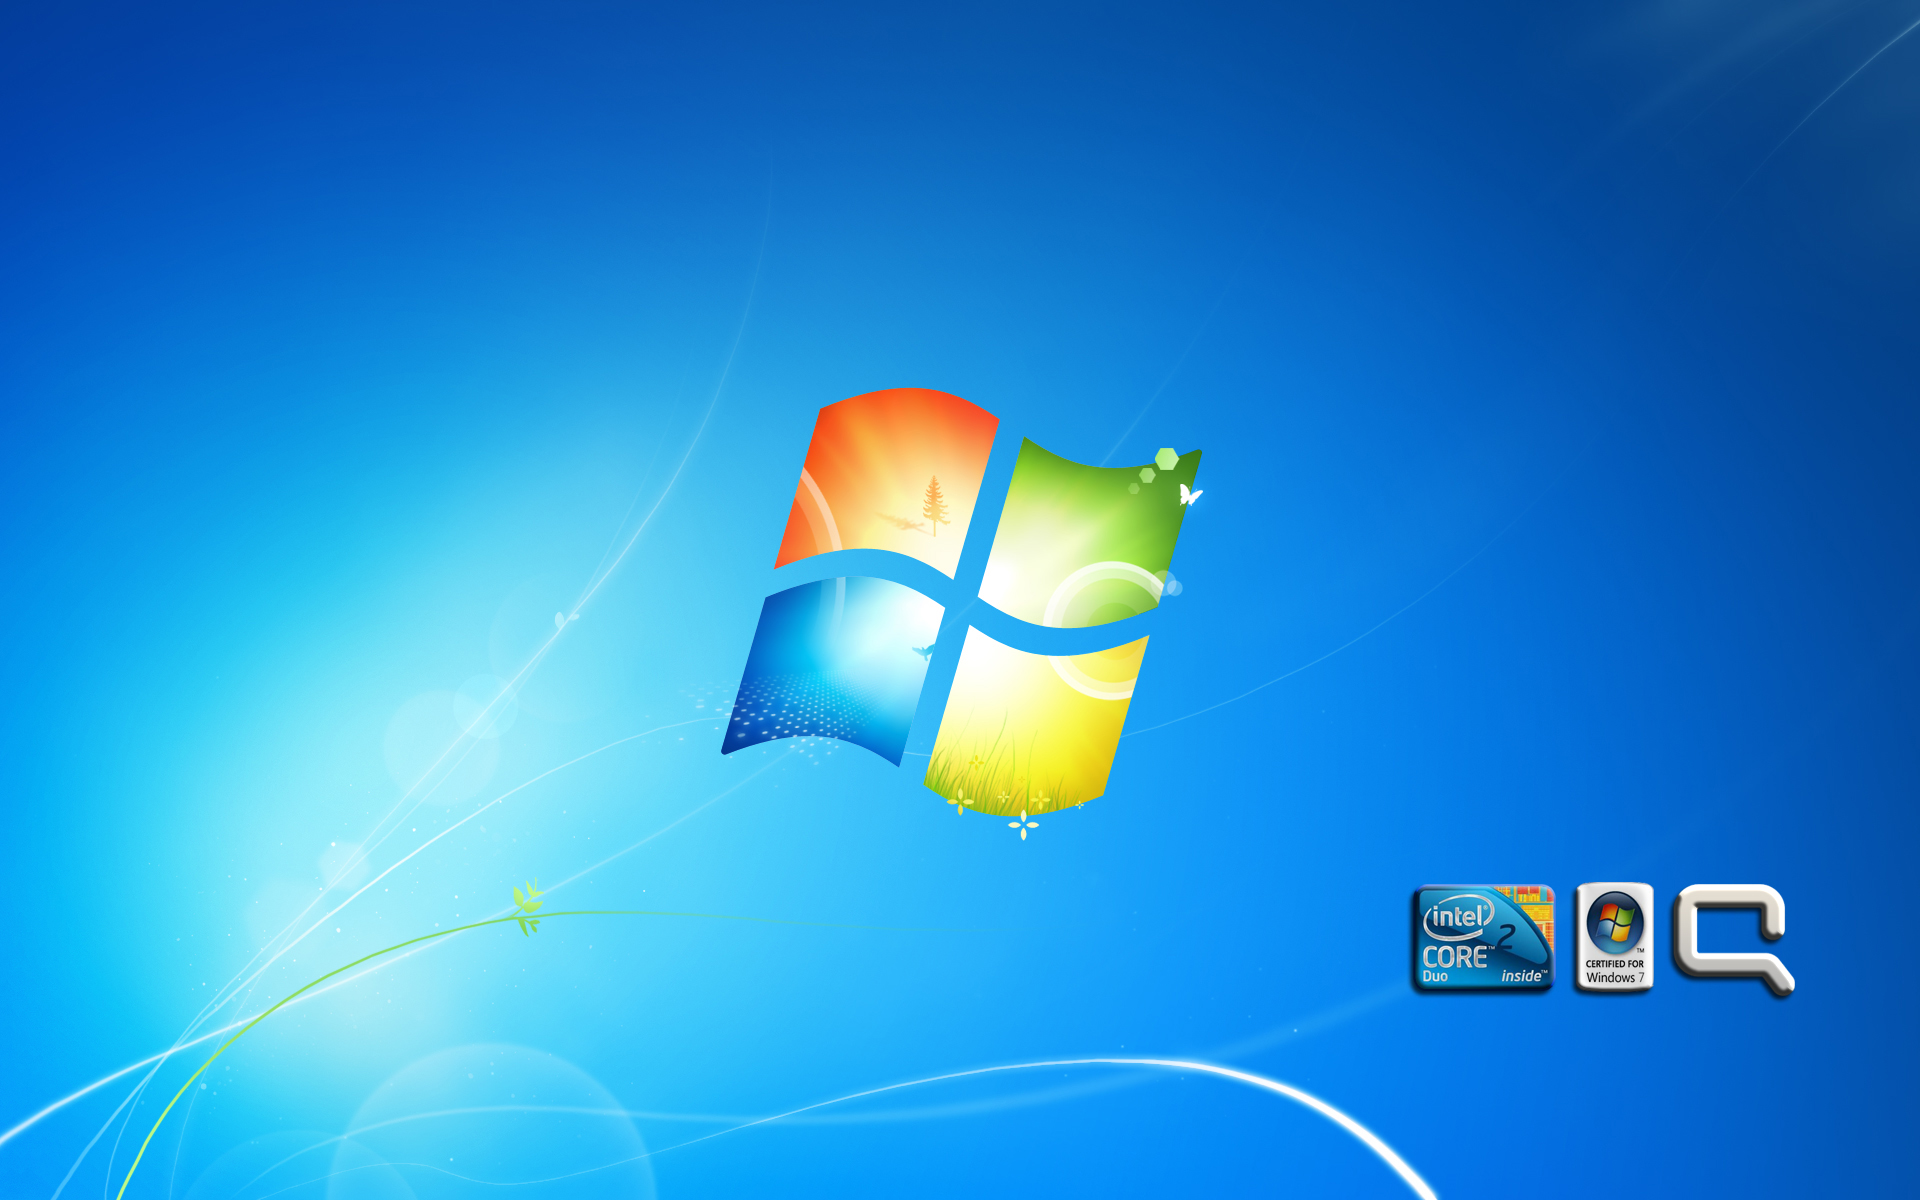 Windows 7 + Compaq by anasbinmuslim on DeviantArt